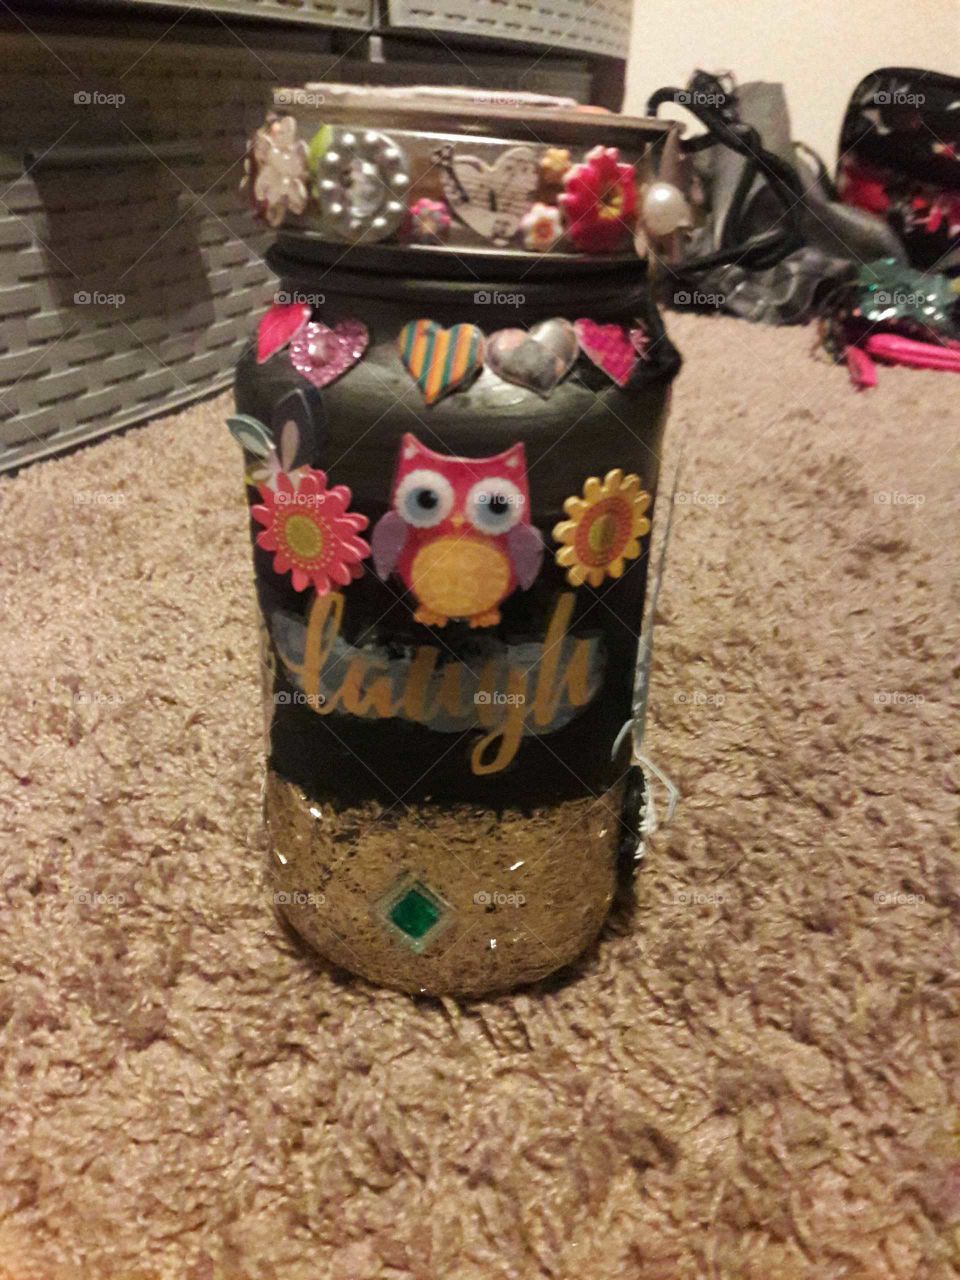 A mason jar that I crafted.